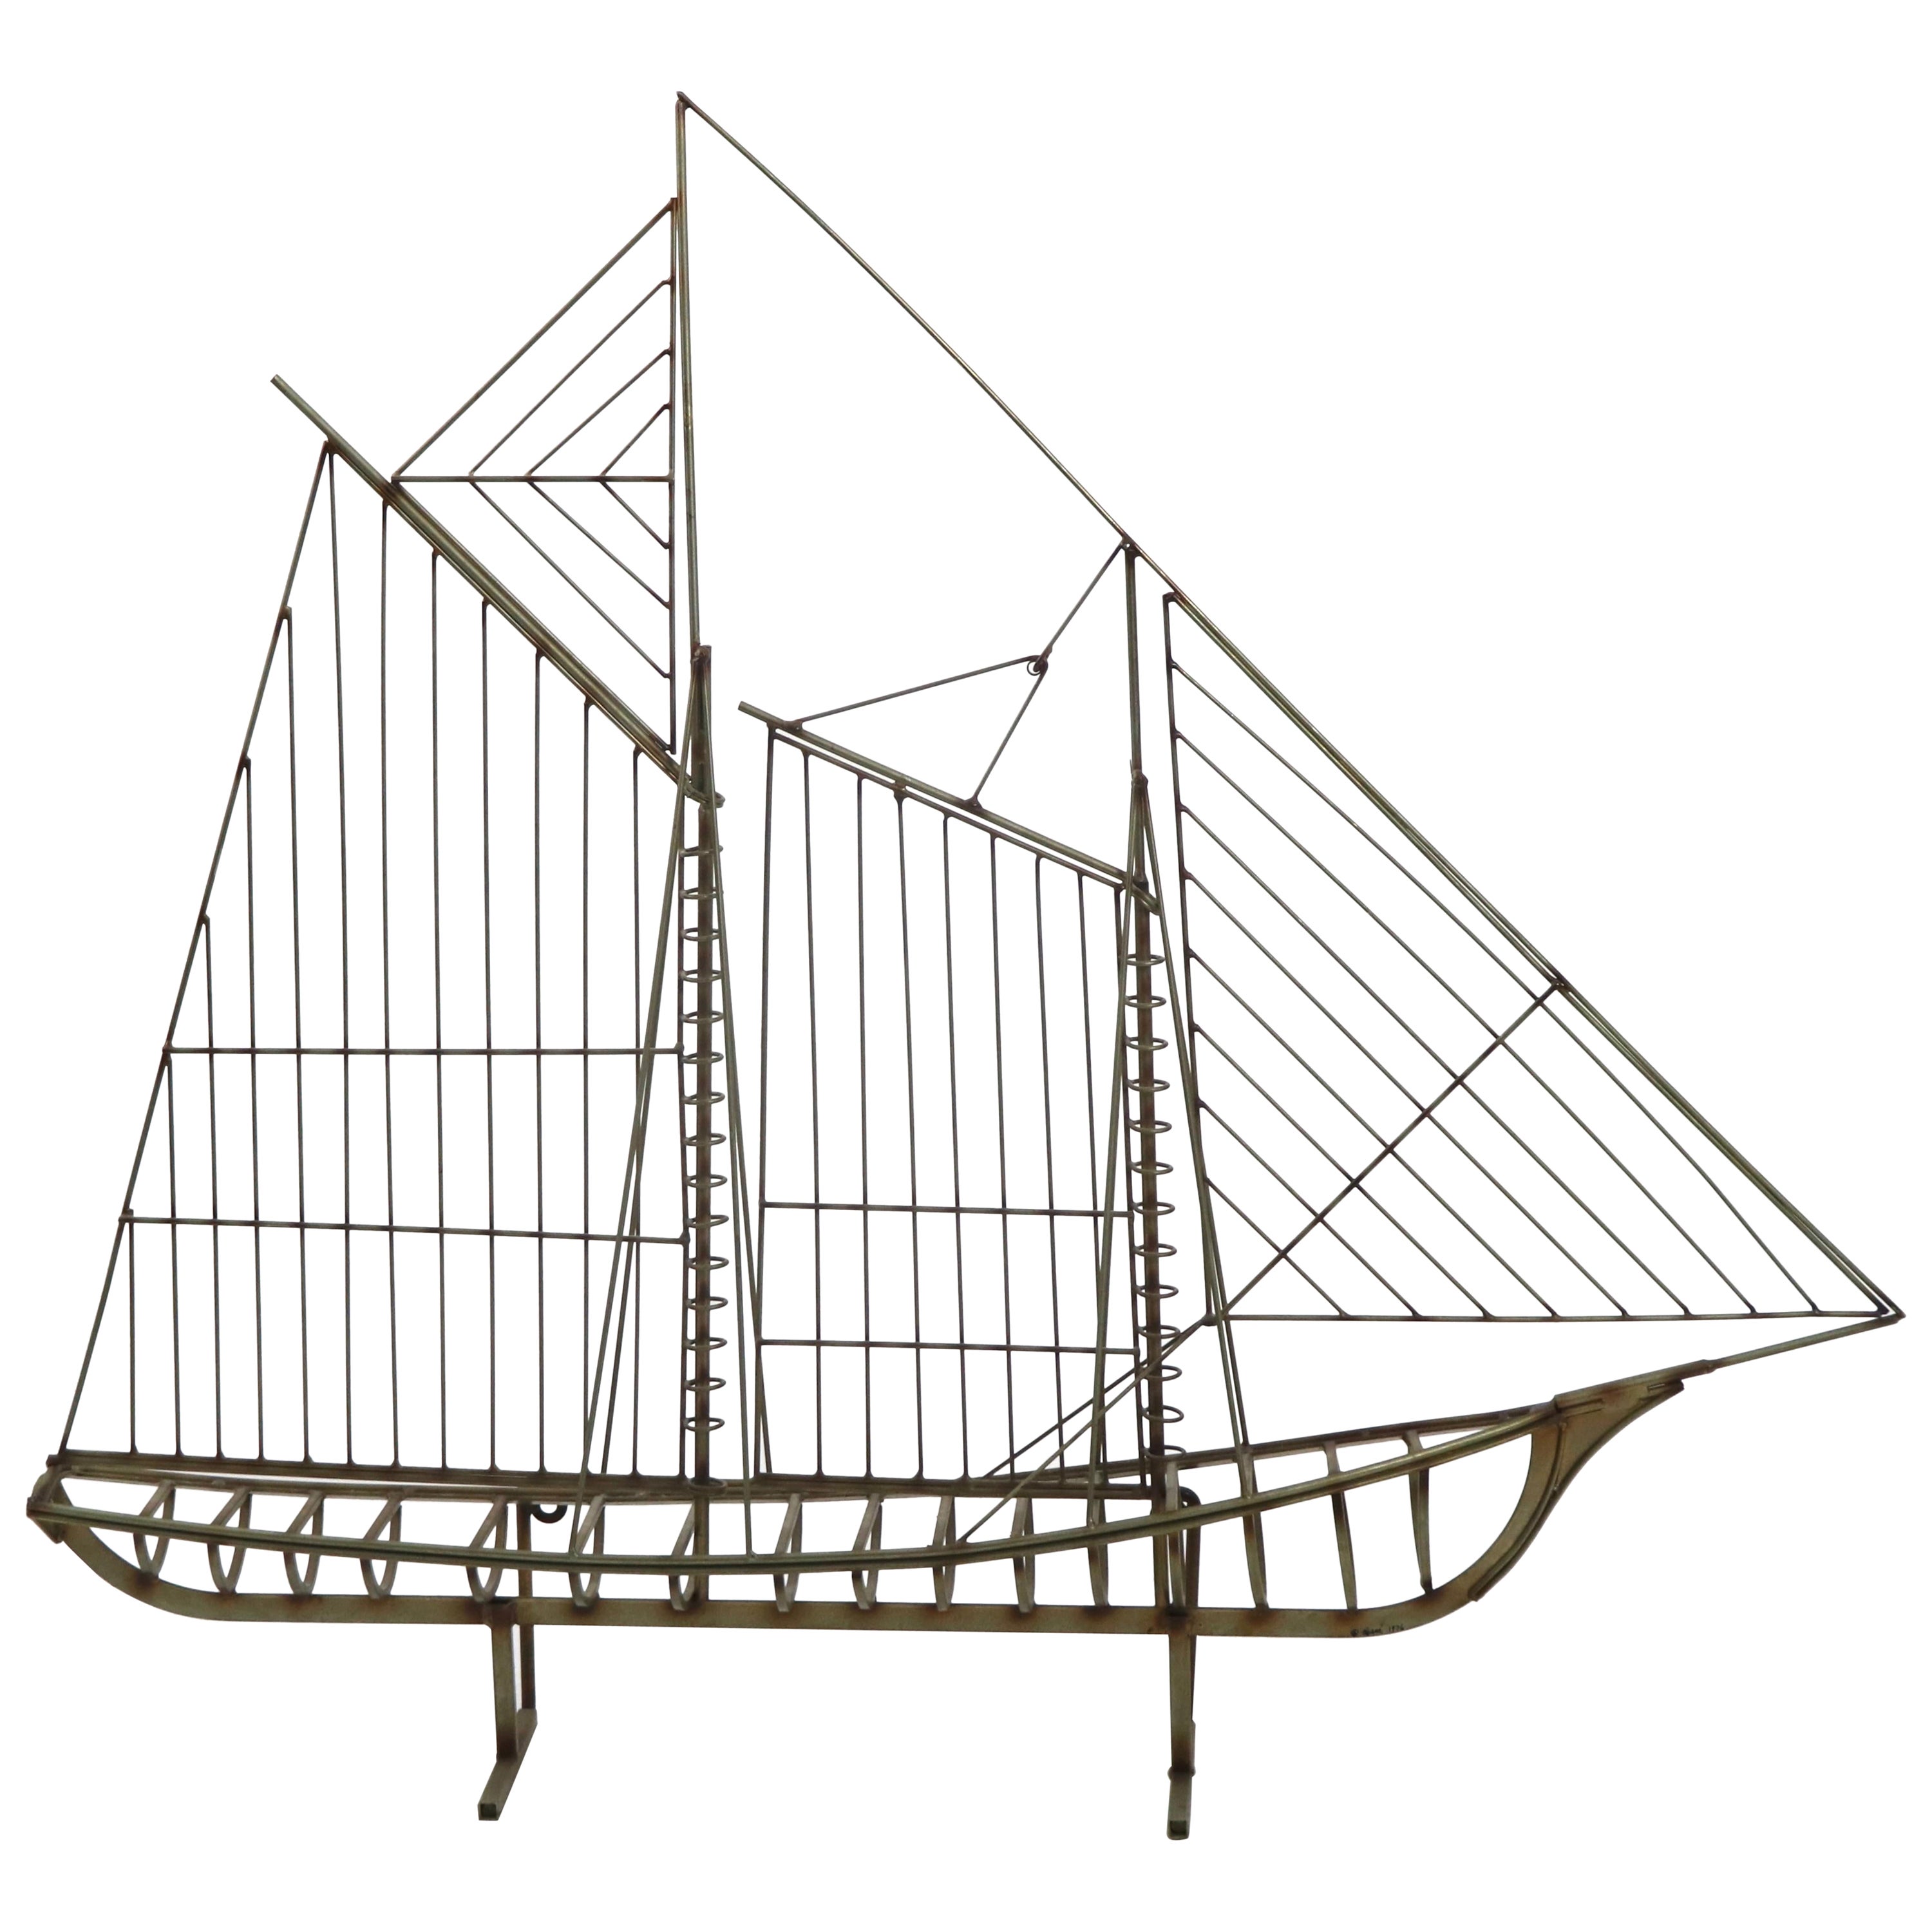 Jere, Segelbootmodell, signiert und datiert 1979